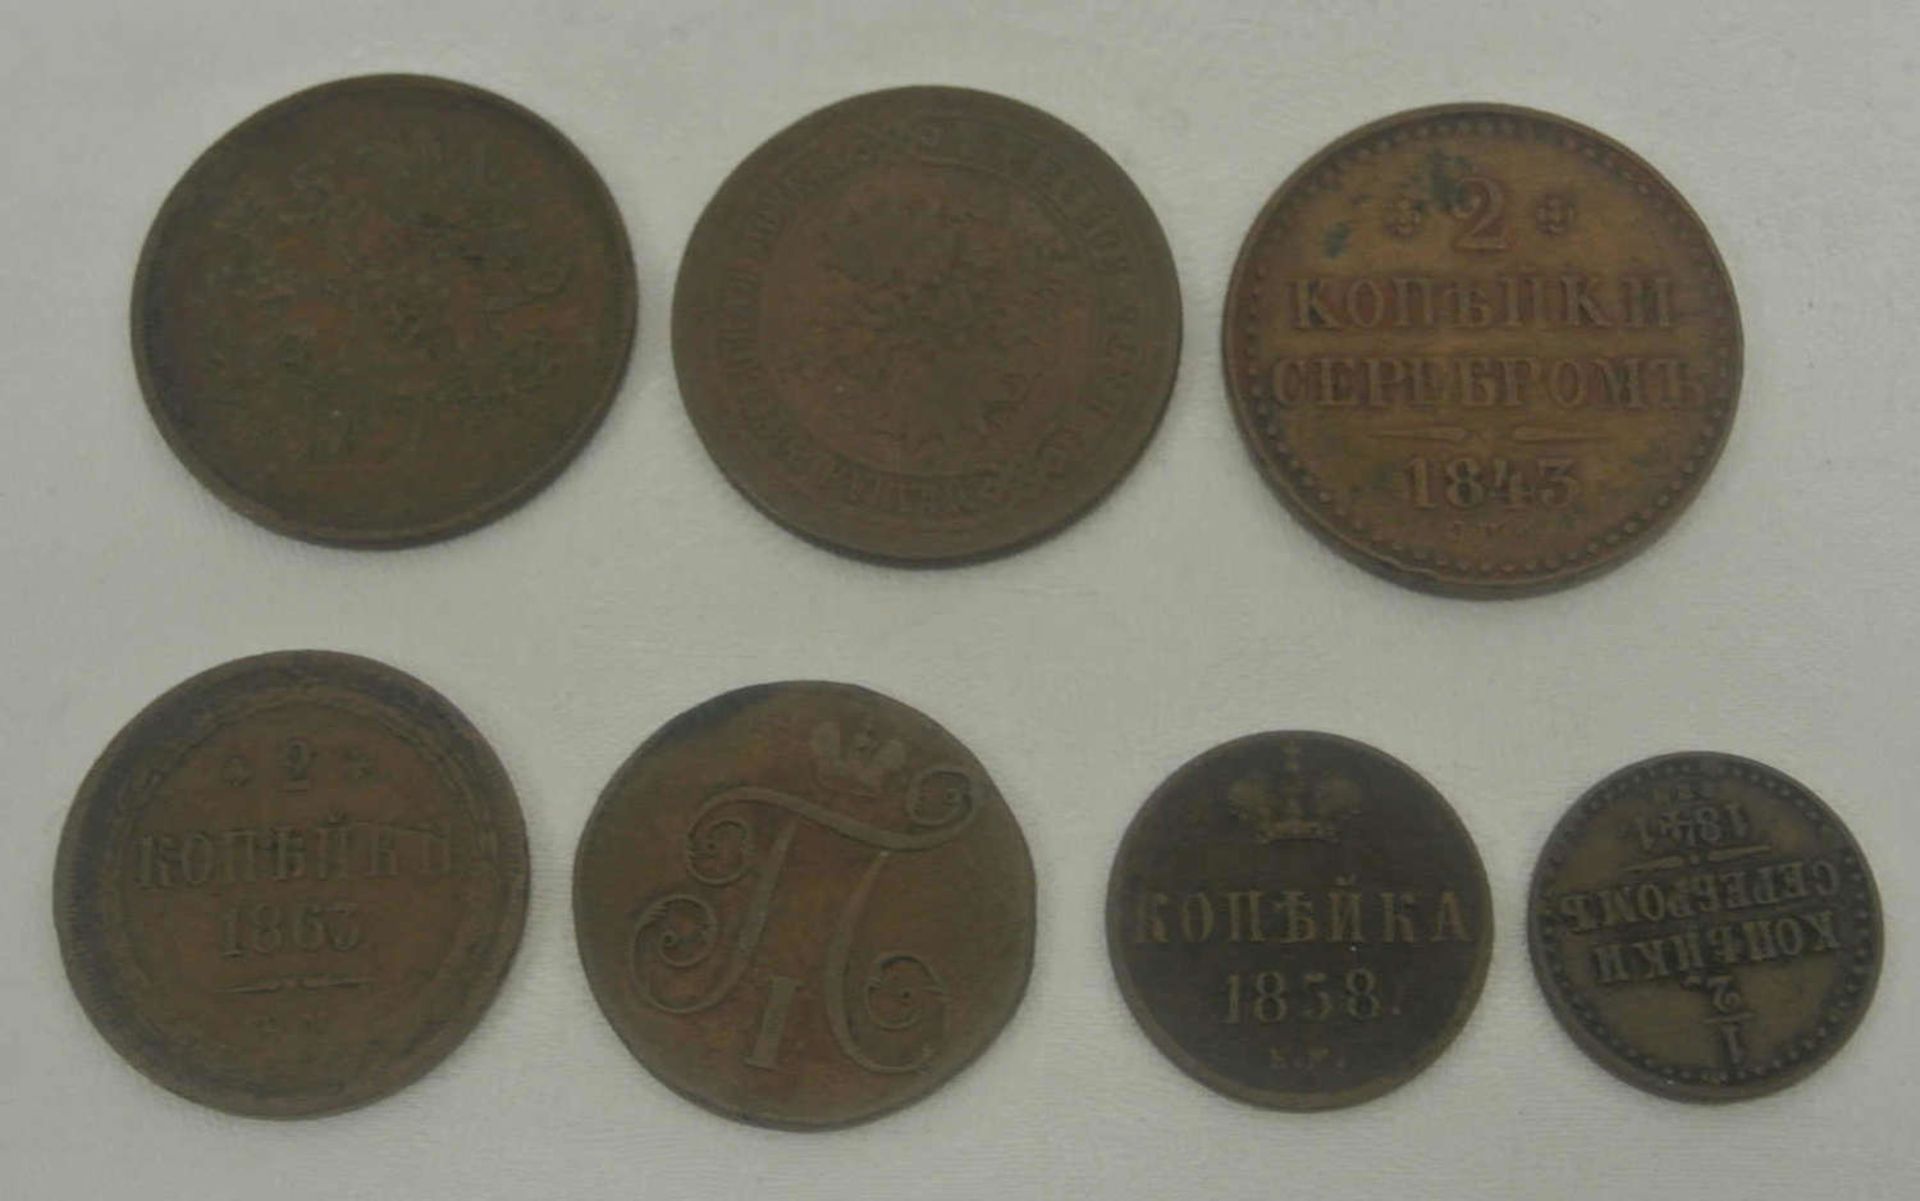 Lot Russland Münzen, Kaiserreich ab 1798, insgesamt 7 Stück. Besichtigung empfohlen.